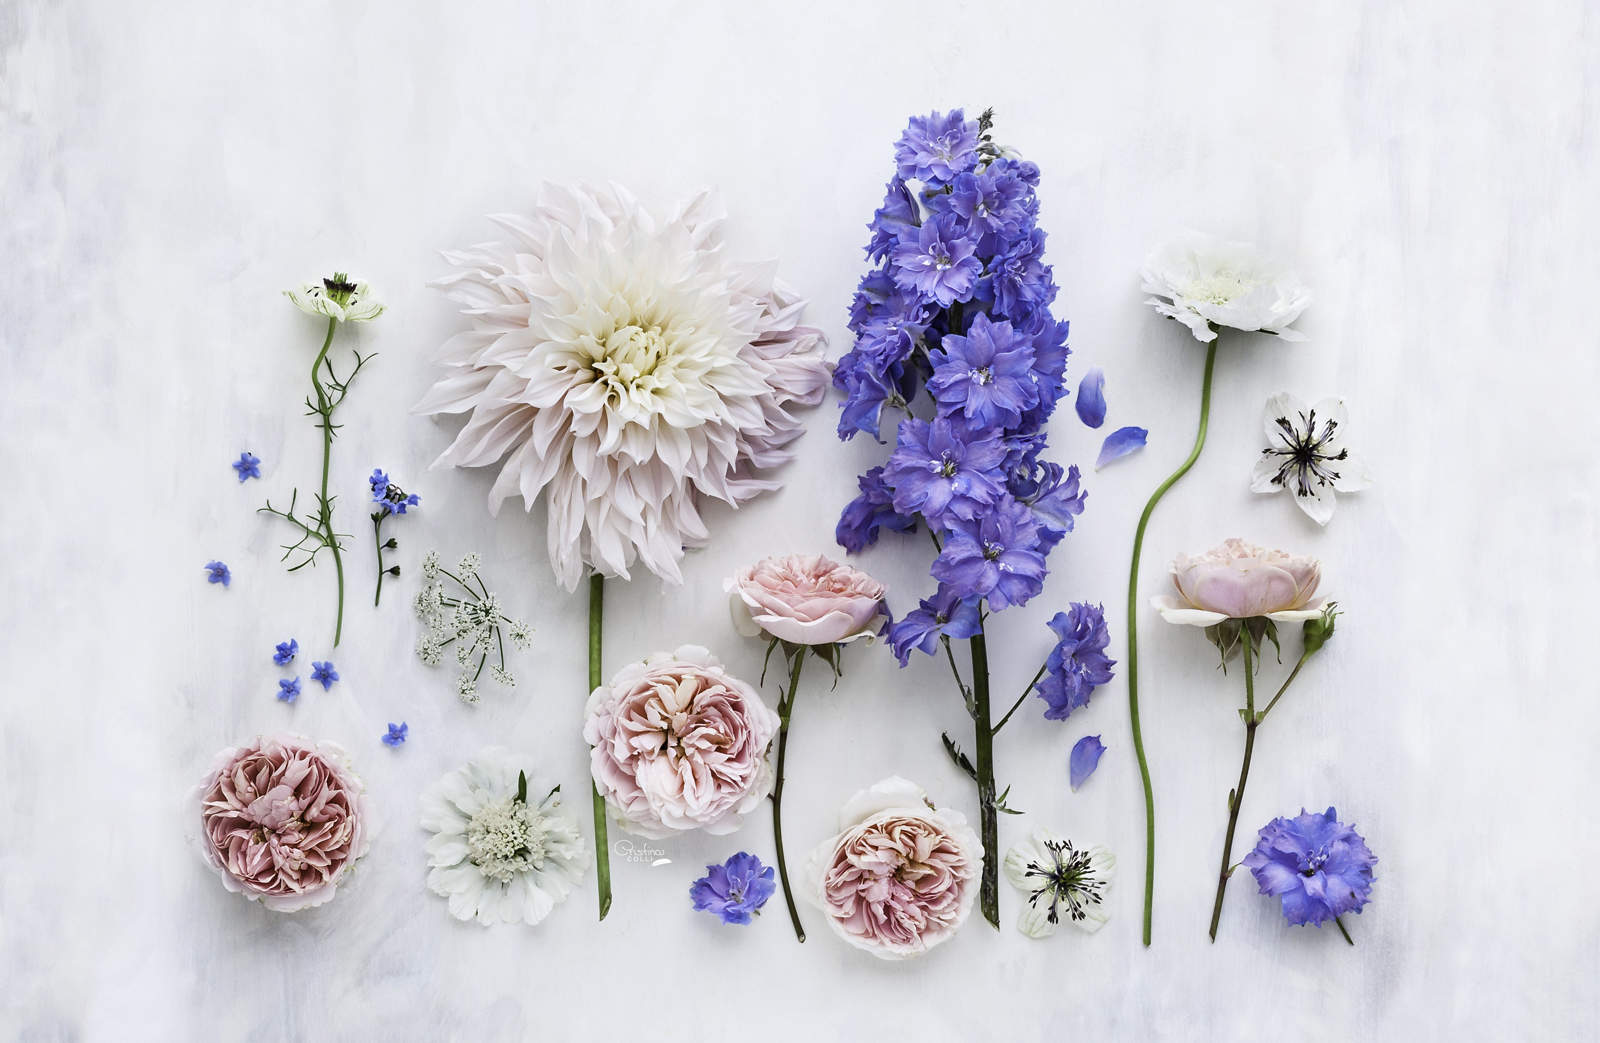 Cristina Colli Is An Artist, Photographer, And Teacher - Flower Desktop , HD Wallpaper & Backgrounds